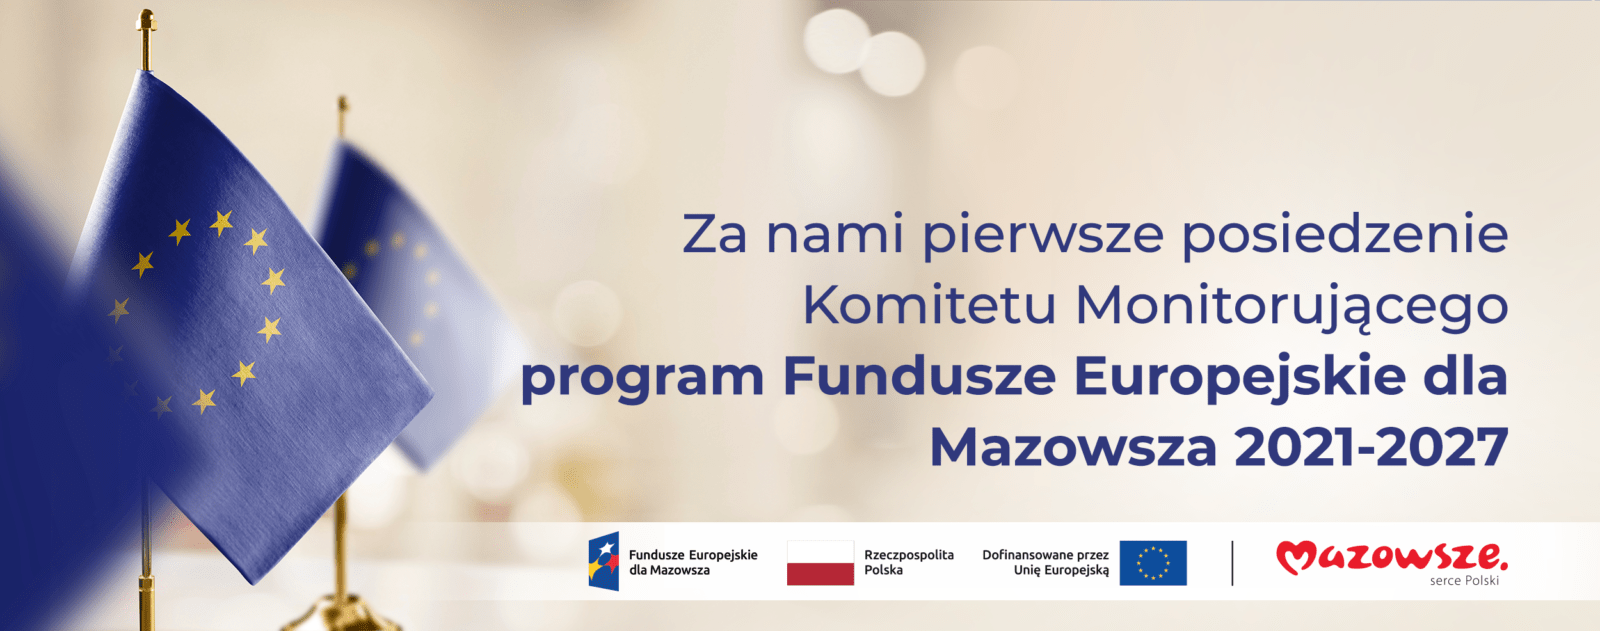 Hasło "Za nami pierwsze posiedzenie Komitetu Monitorującego Program Fundusze Europejskie dla Mazowsza 2021-2027", a w tle flagi Unii Europejskiej